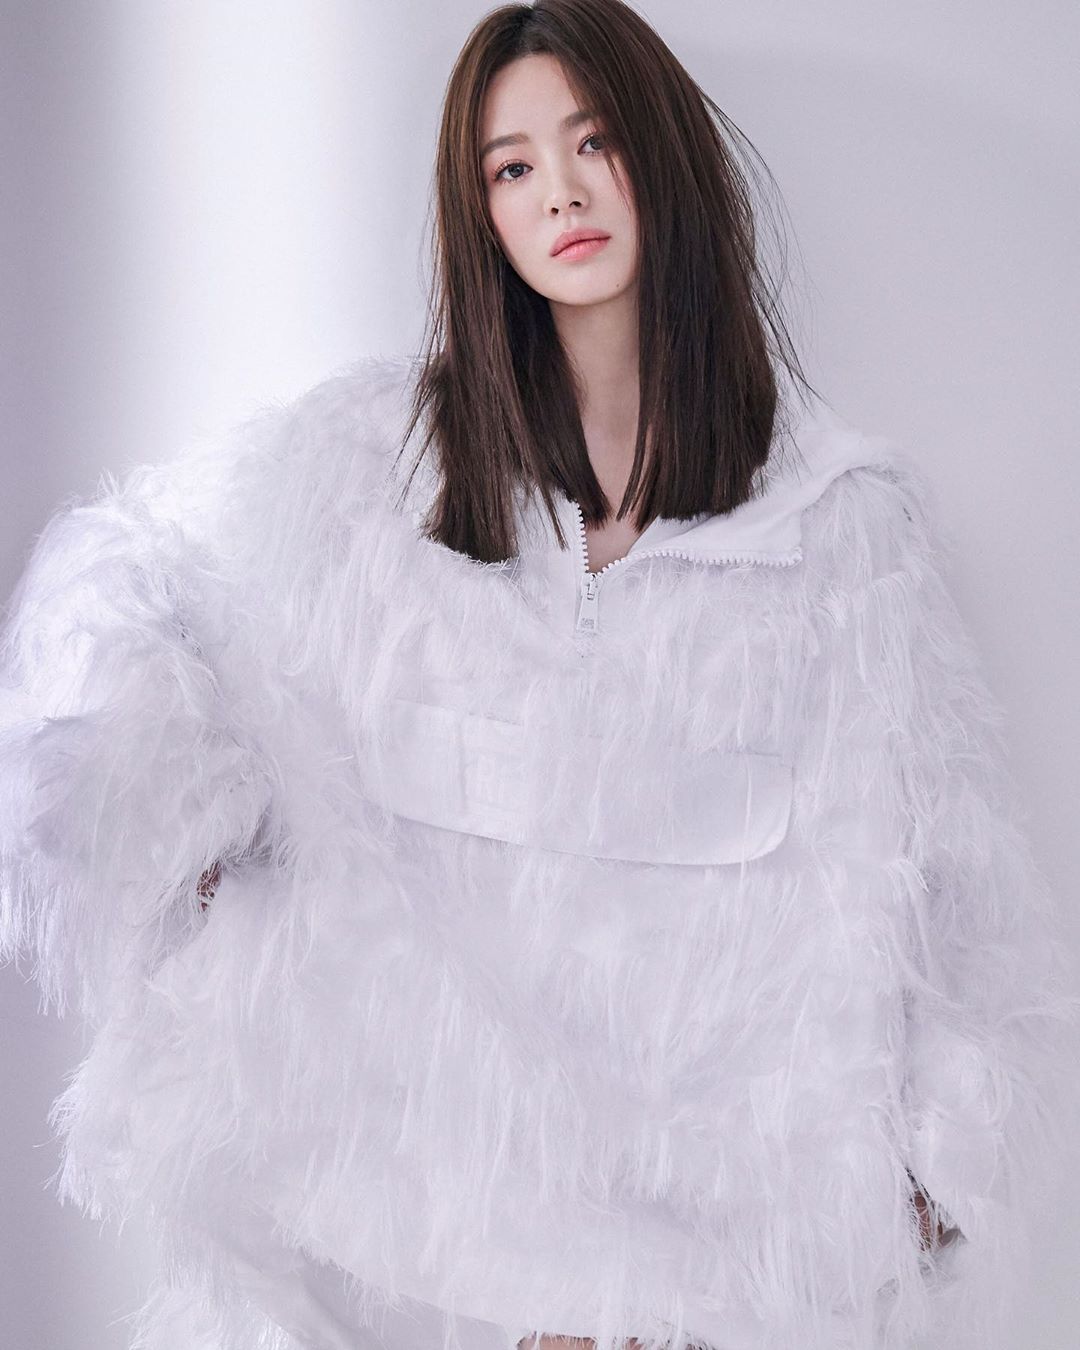 6 kiểu tóc xuất sắc nhất của Song Hye Kyo, chị em U30 'đu' theo thì nhan sắc dễ thăng hạng trong nháy mắt - Ảnh 8